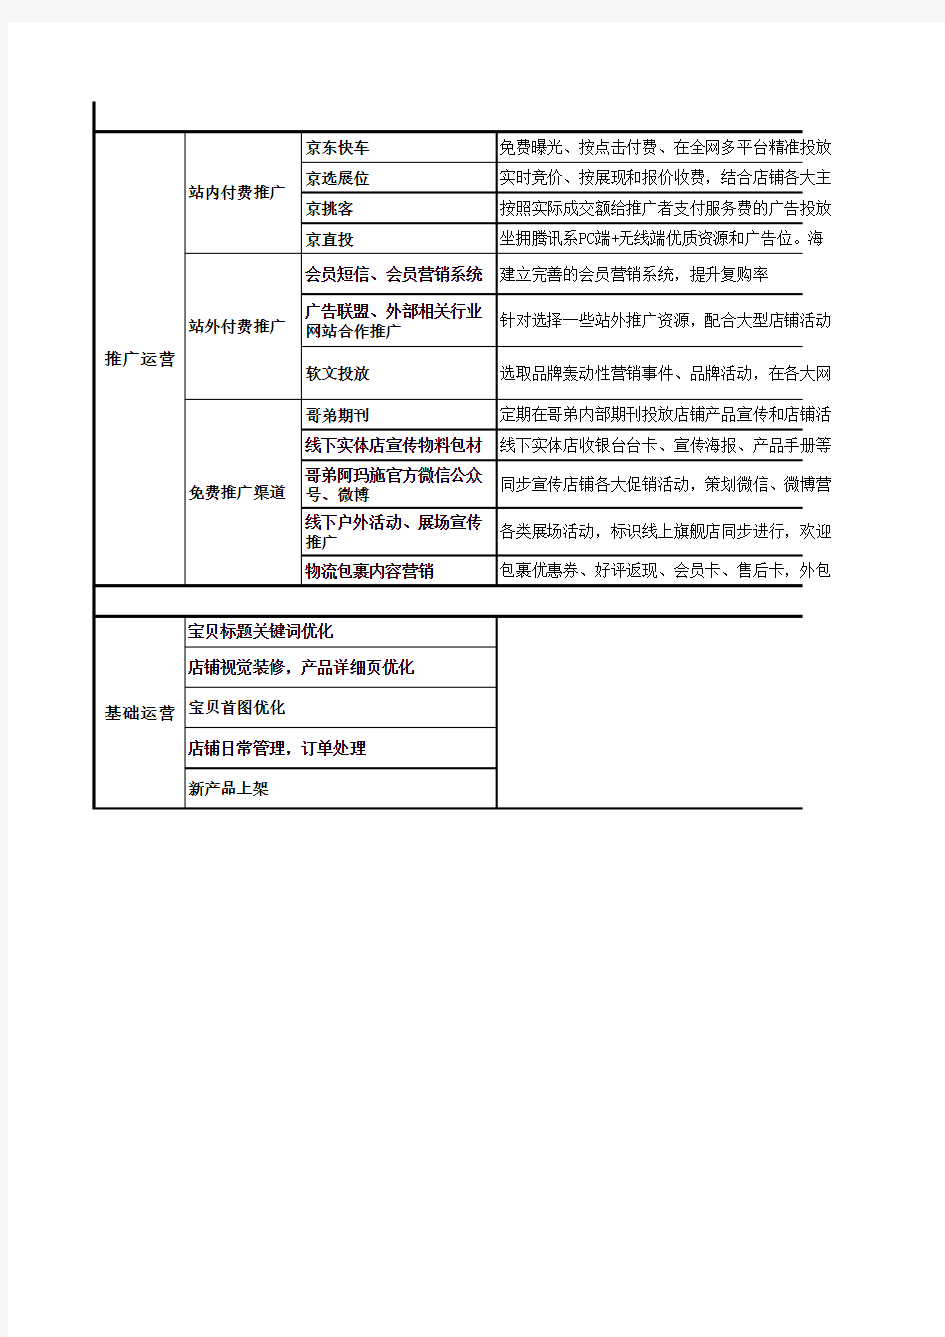 2019年天猫京东店铺年度运营计划详细